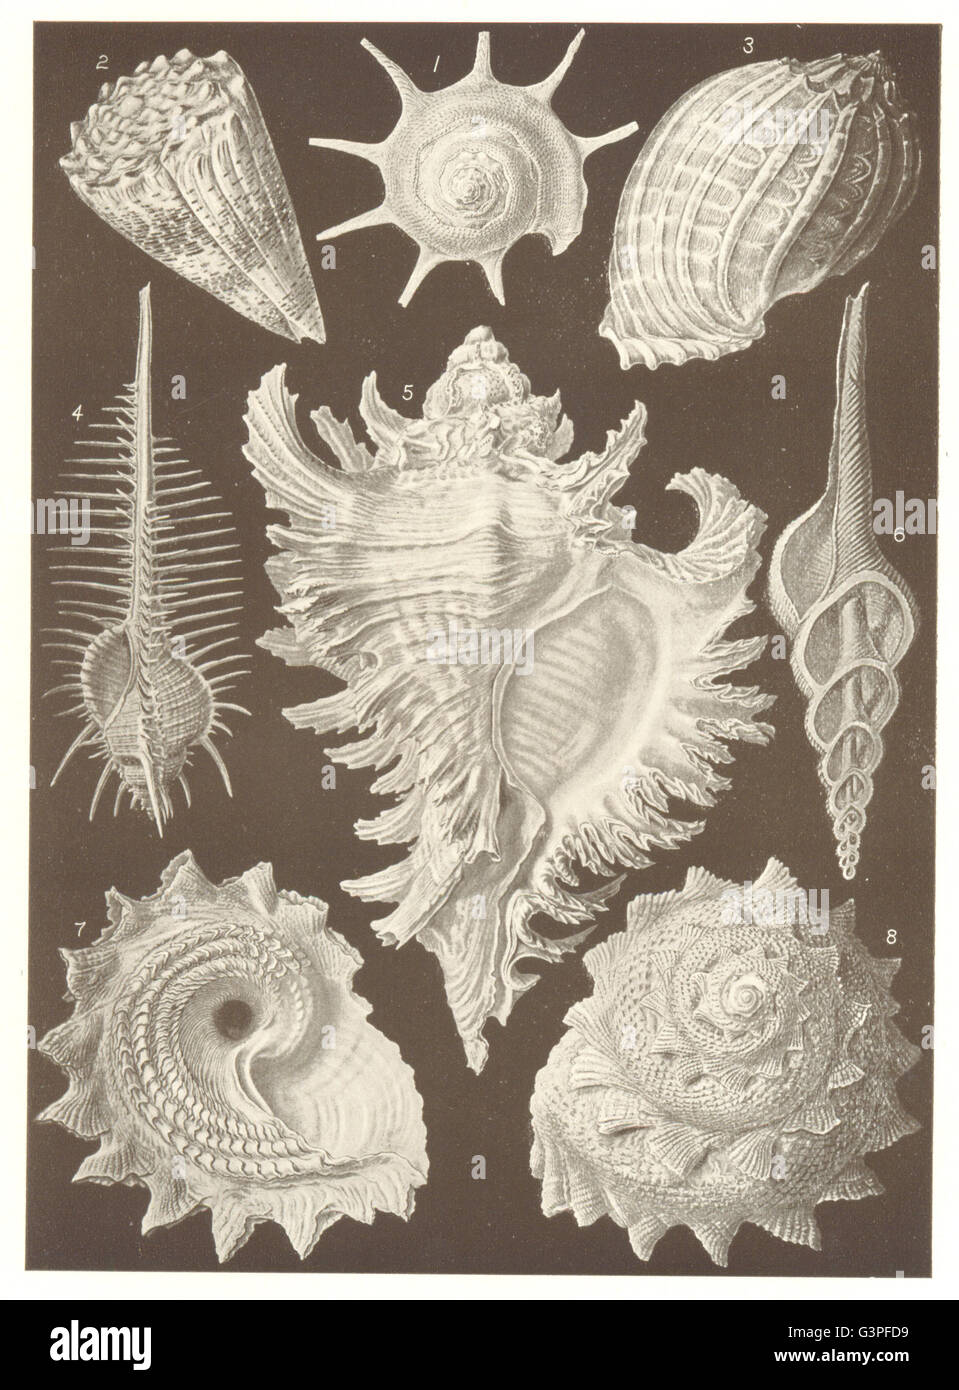 MUREX: Calcar Conus Harpa ventricosa tenuispinus inflatus Fusus longicauda, 1907 Stock Photo